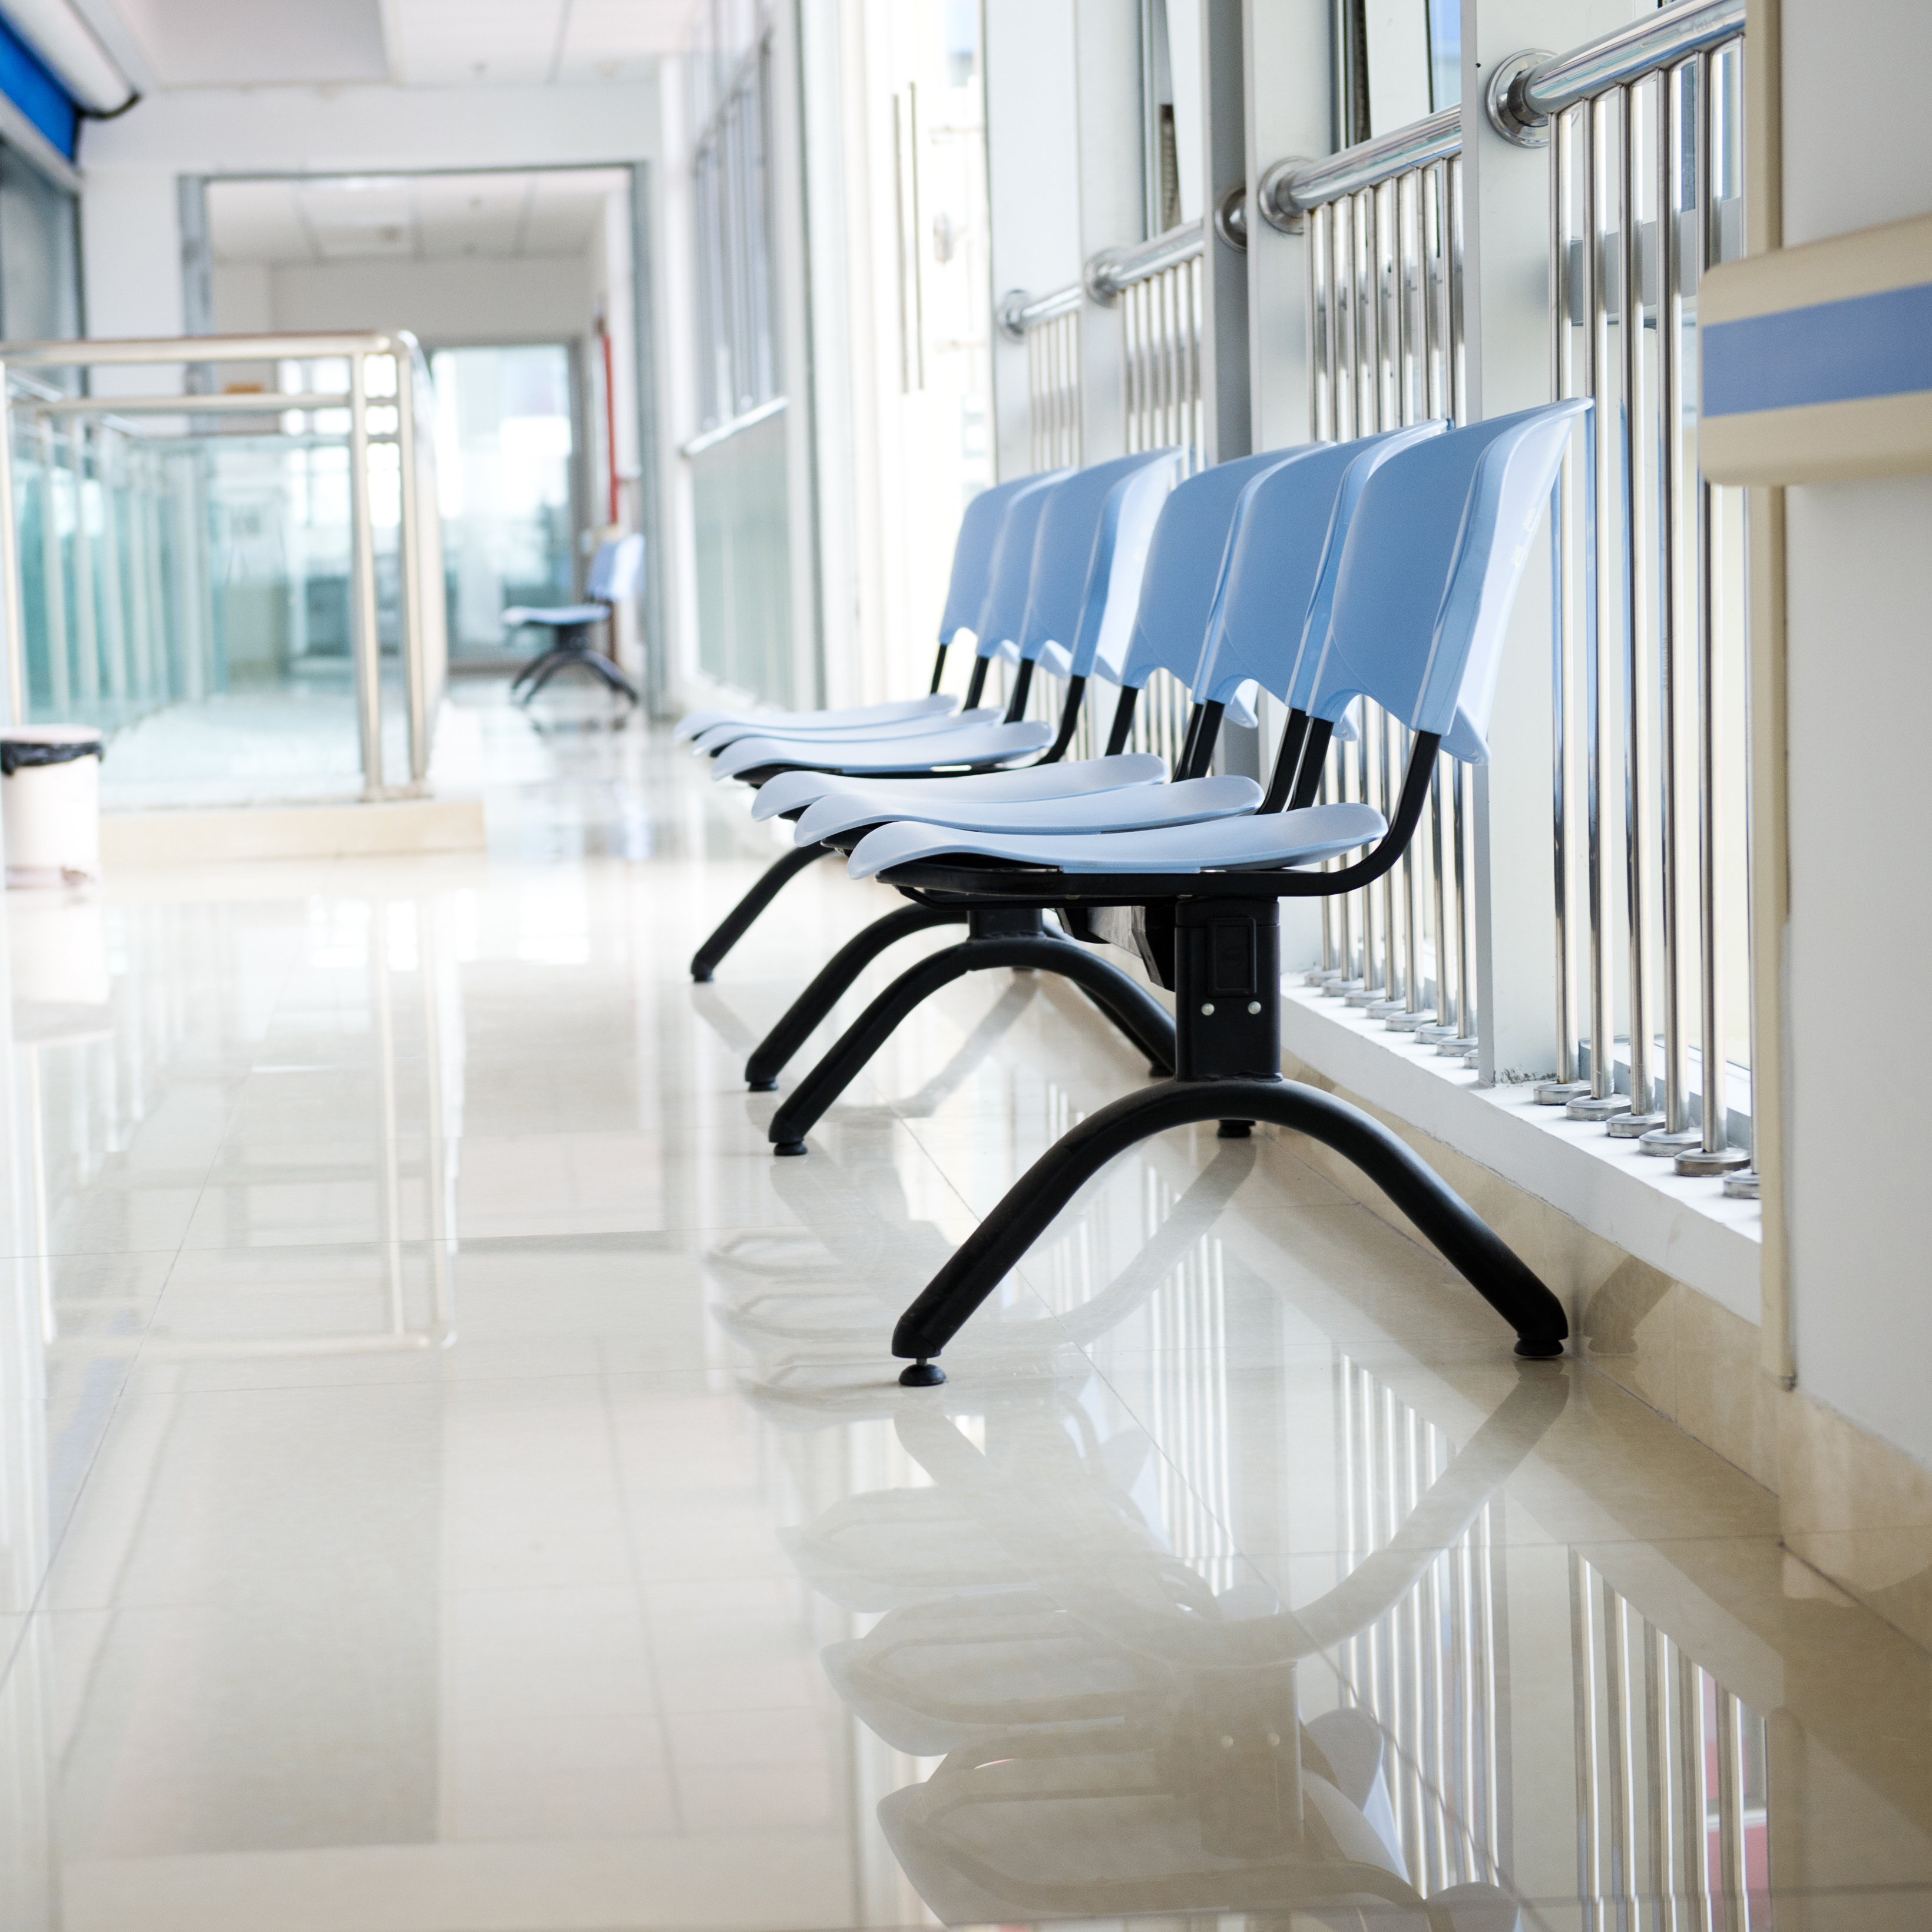 A hospital corridor | Source: Shutterstock